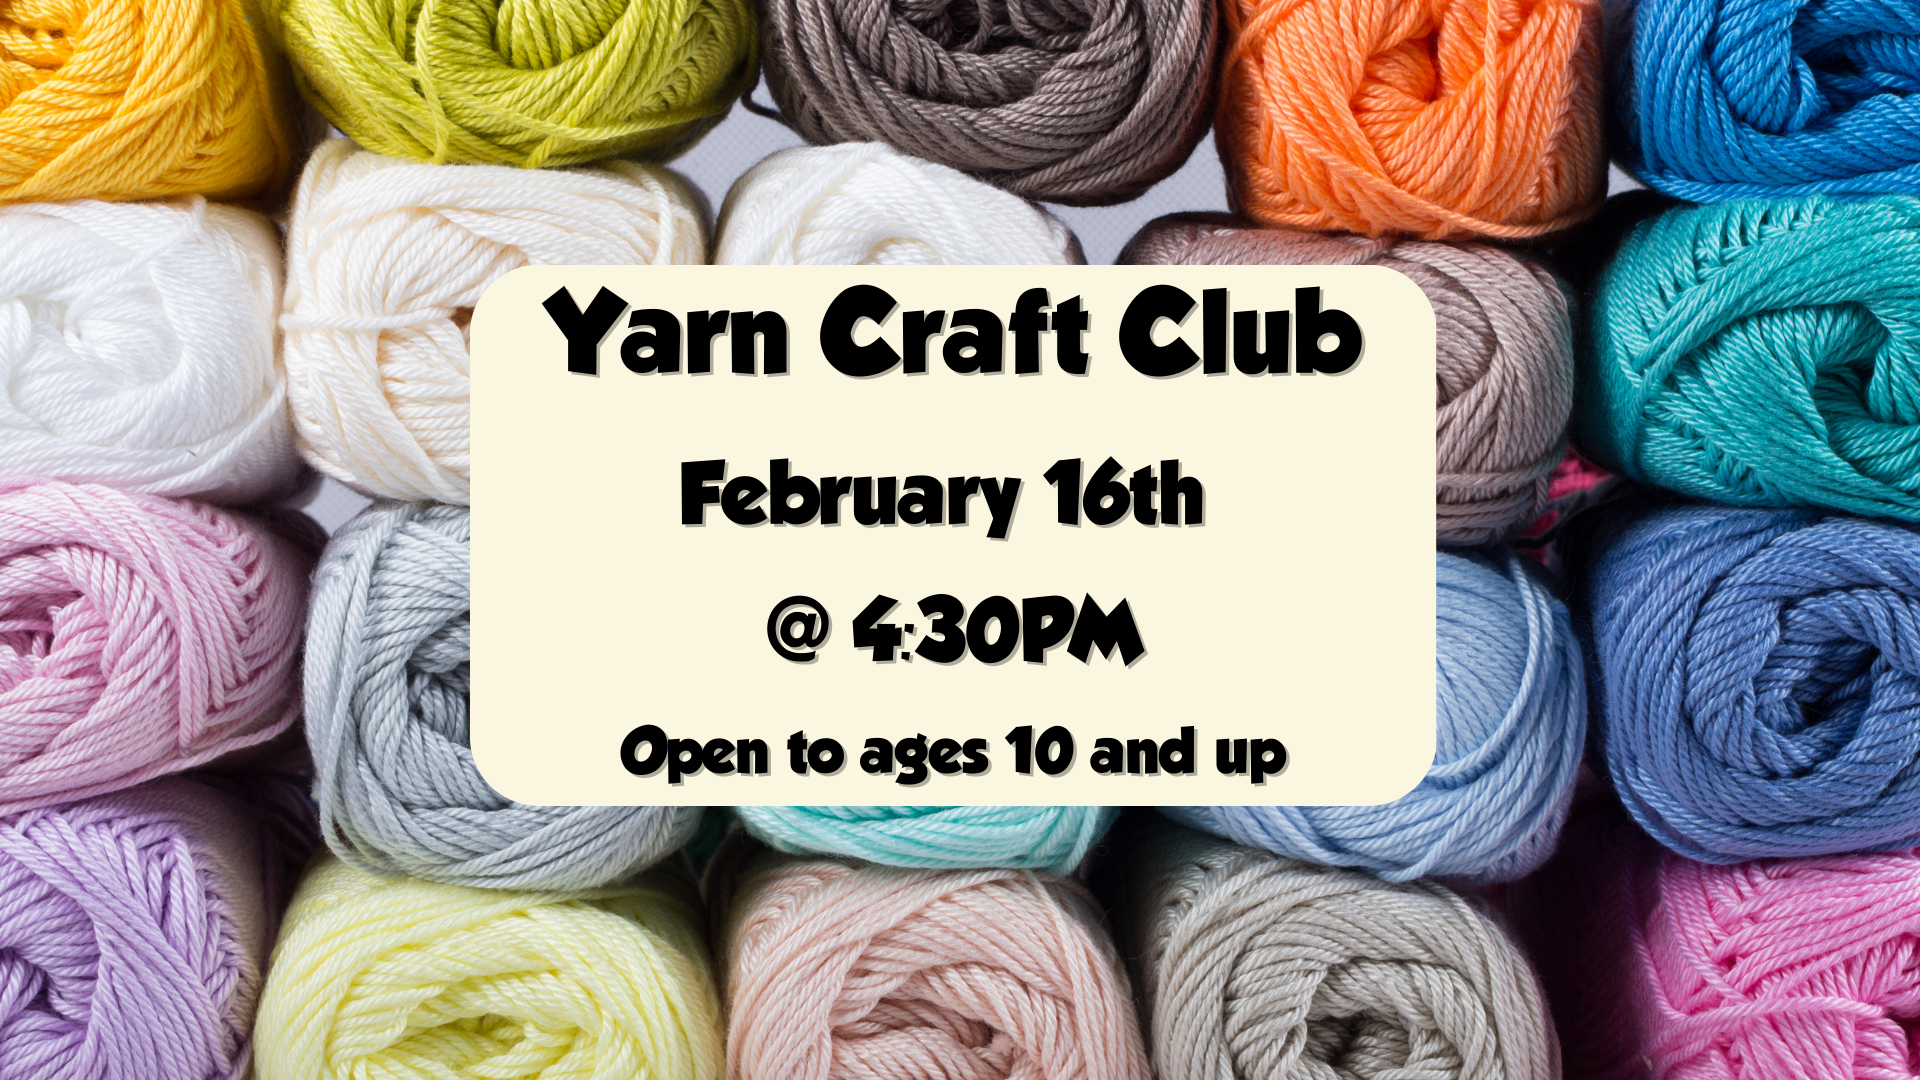 Yarn Craft Club, February 16th at 4:30pm